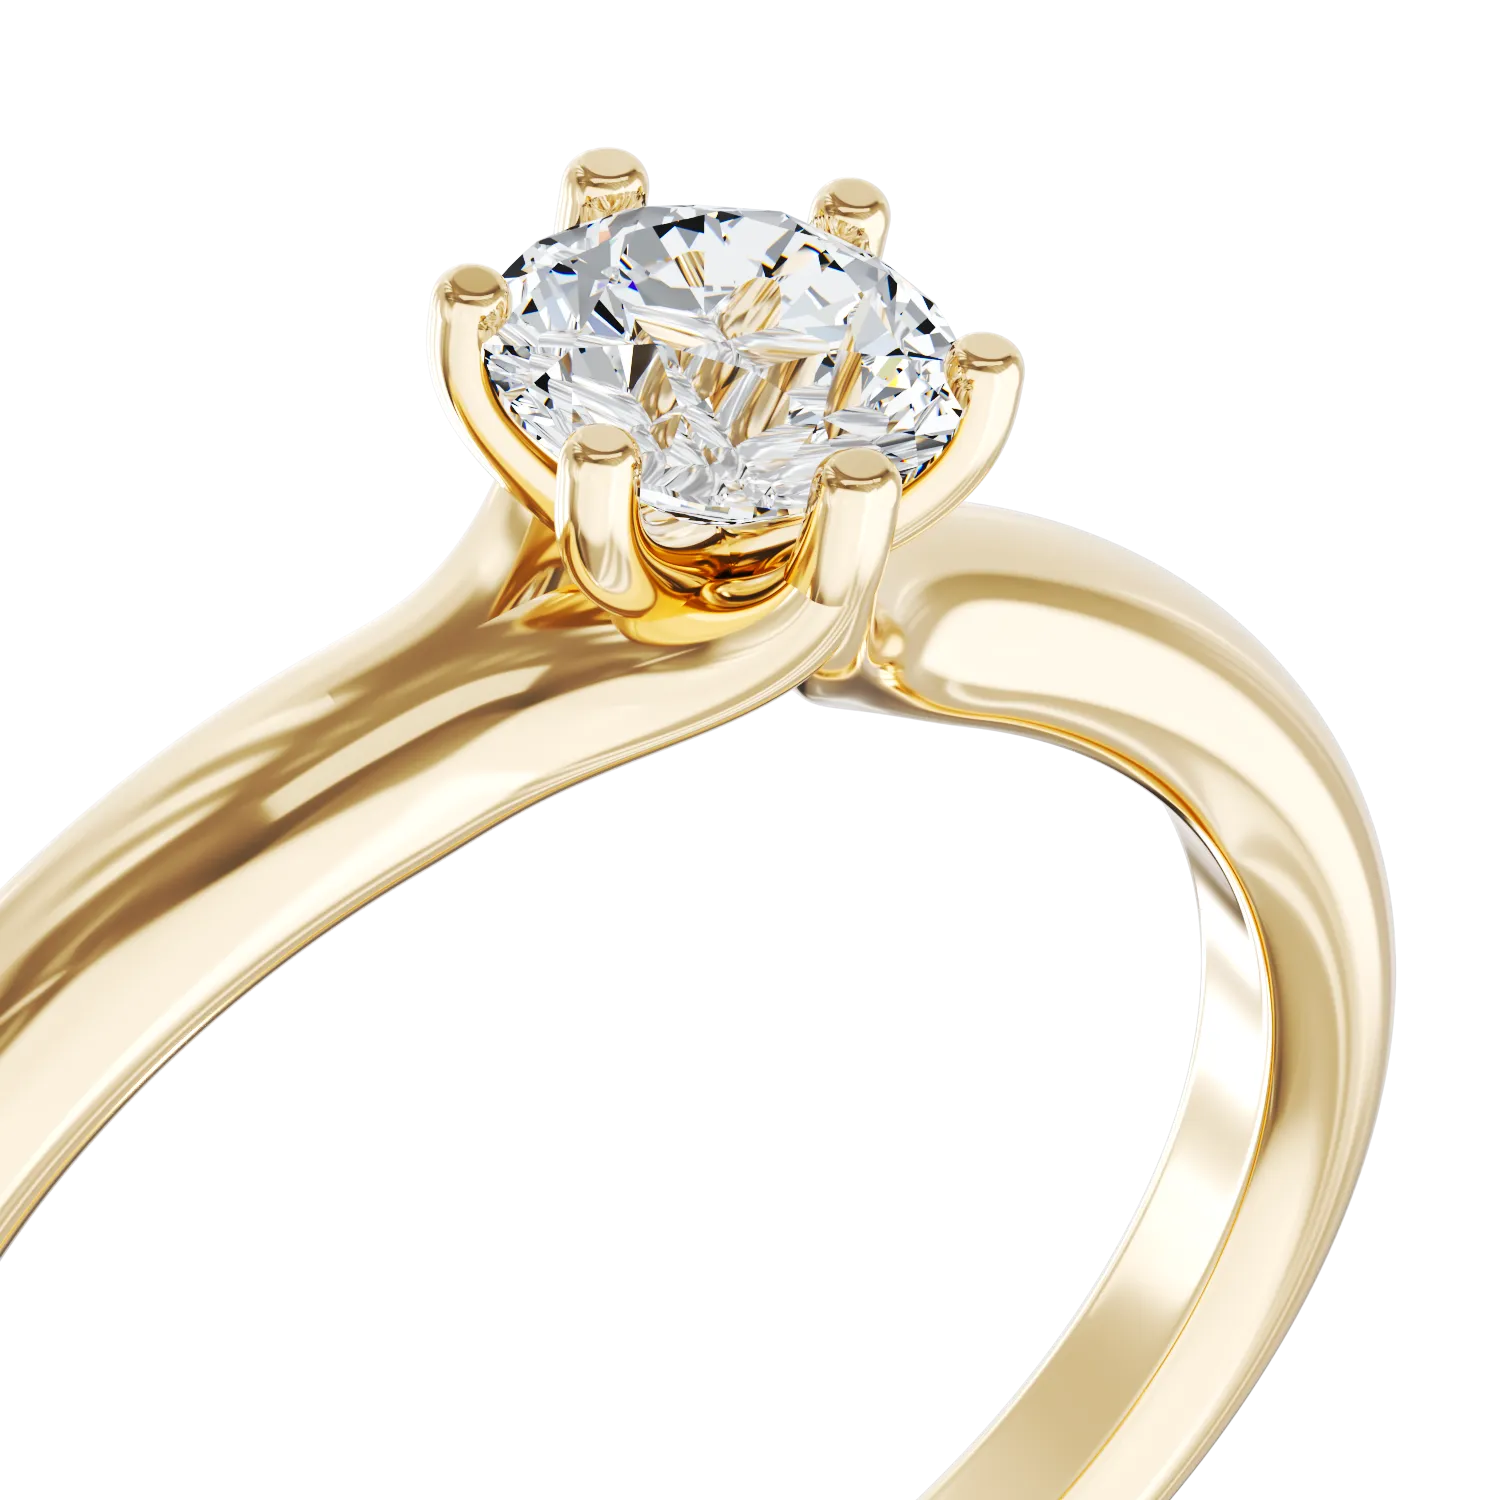 Eljegyzési gyűrű 18K-os sárga aranyból 0,5ct gyémánttal. Gramm: 2,50